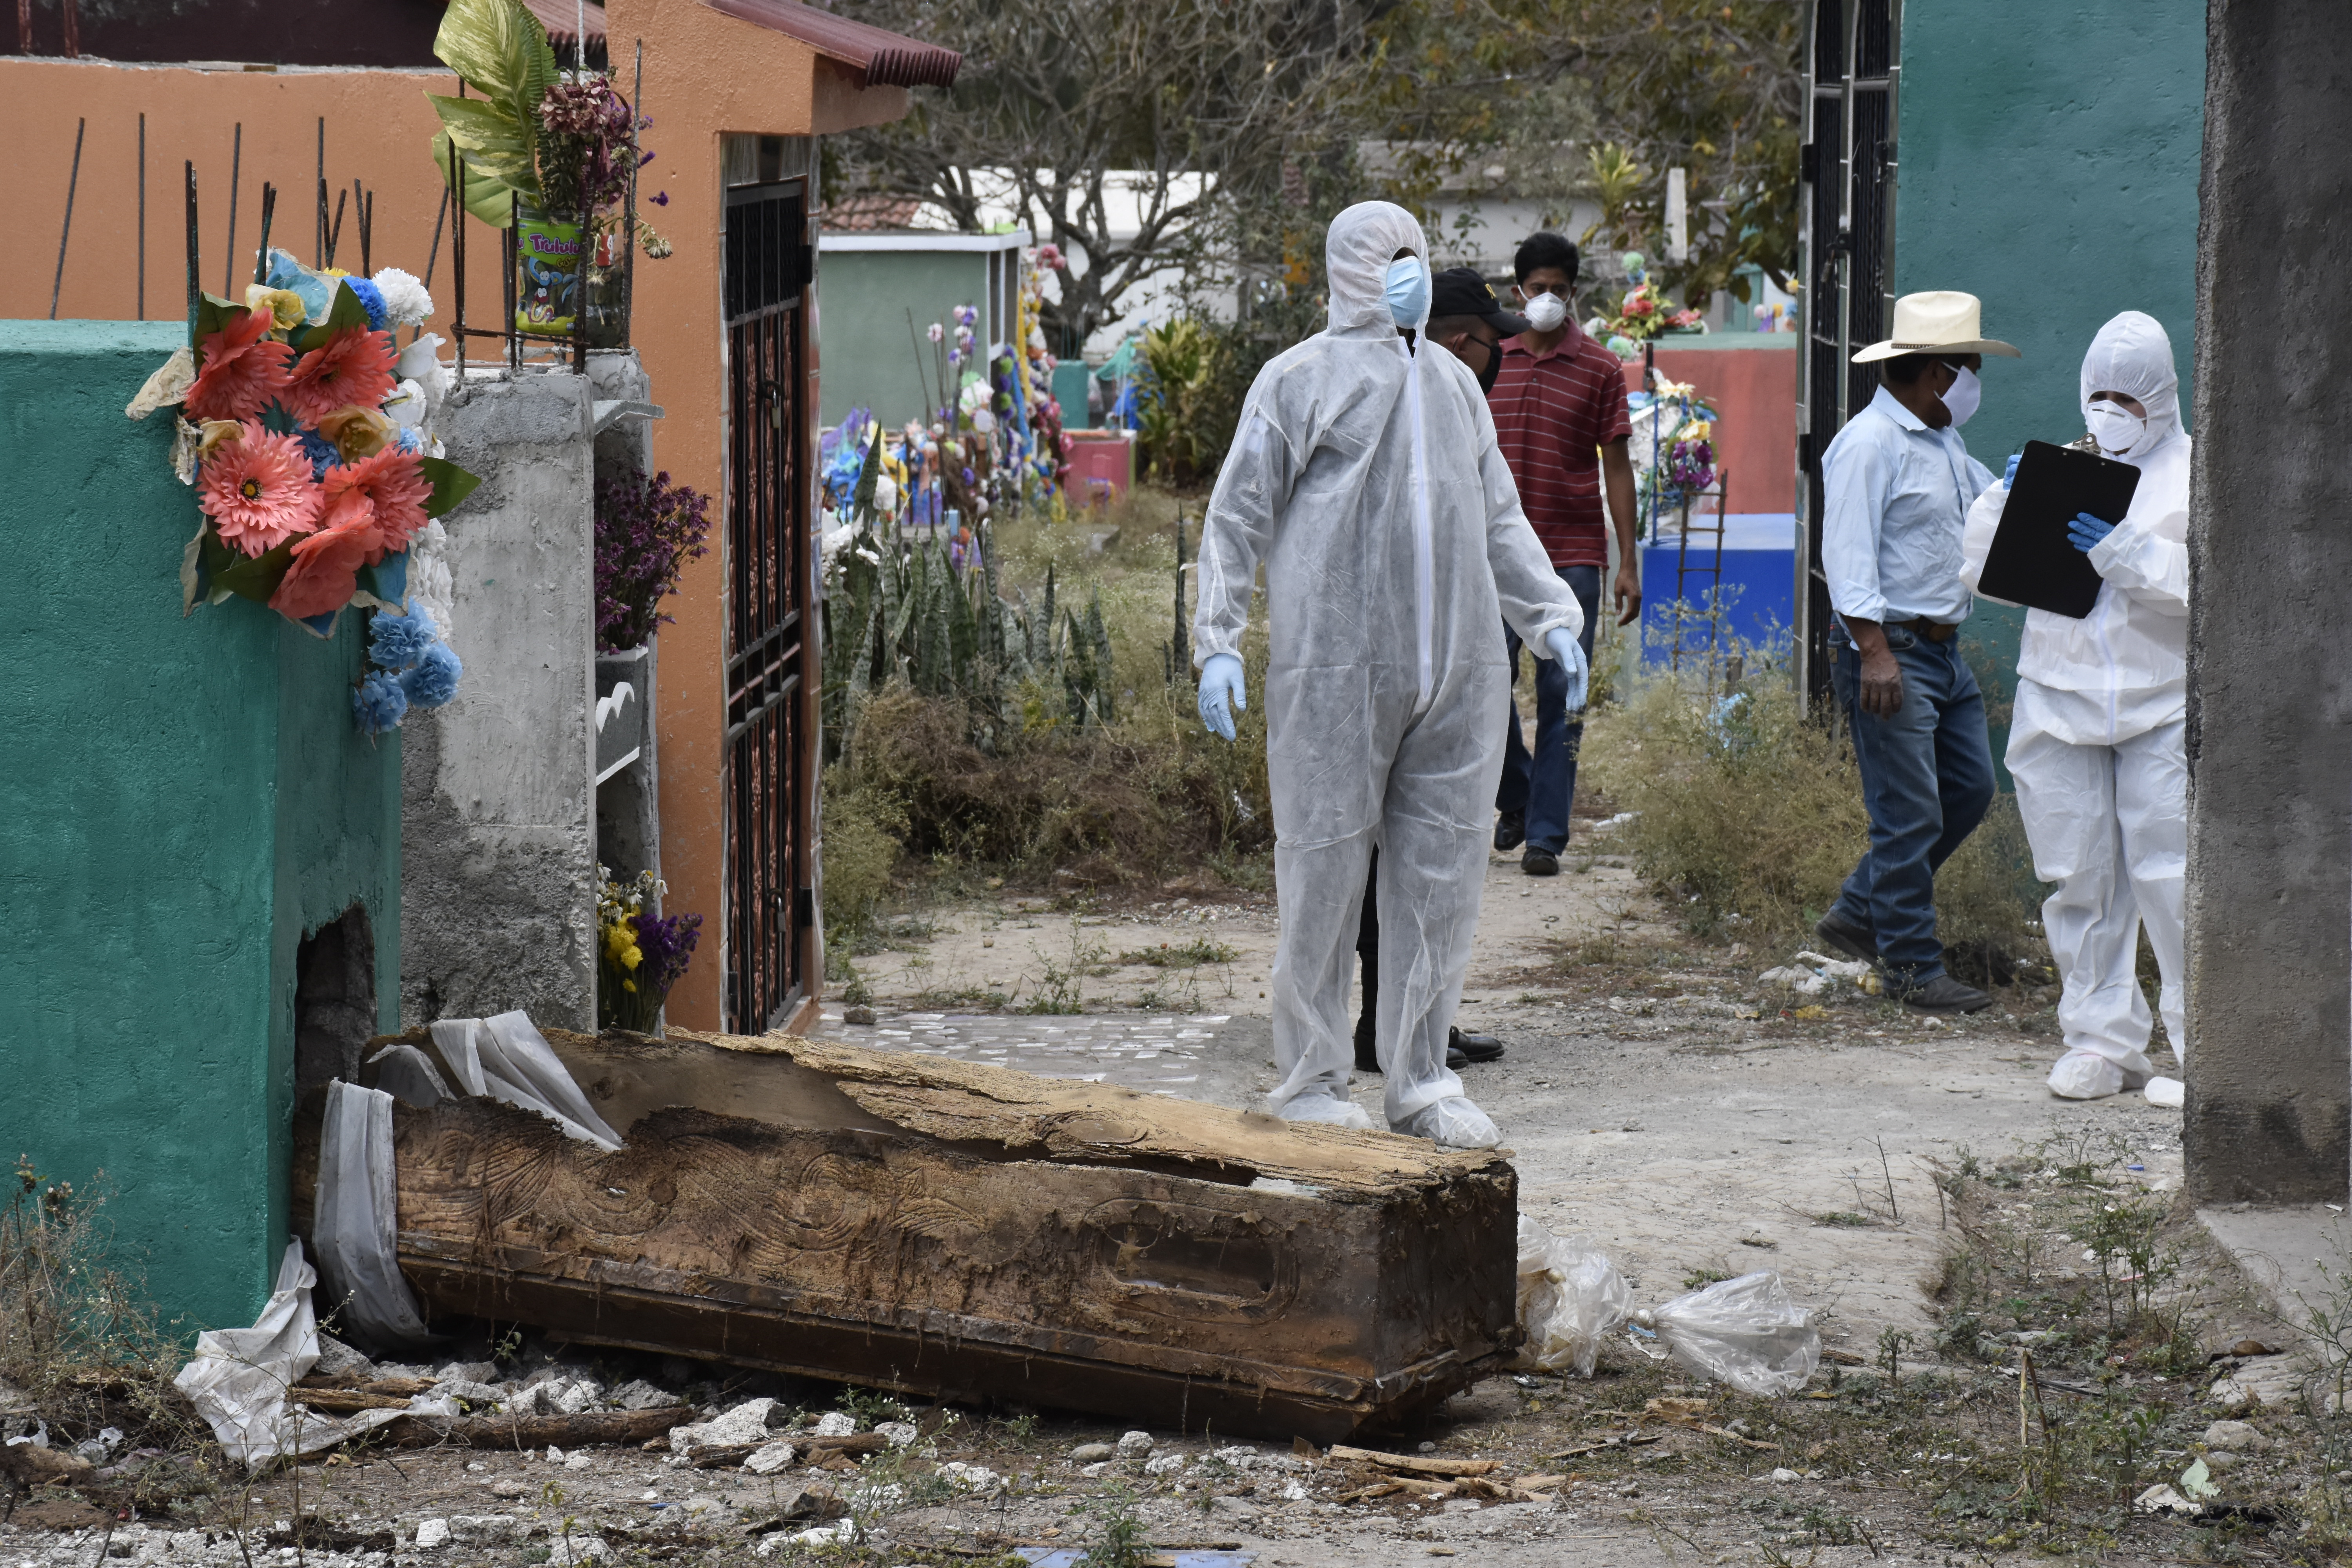 
Fiscales del Ministerio Publico recaban evidencia en el lugar donde fue profanada una tumba. (Foto Prensa Libre: Cortesía Elizabeth Hernández)
